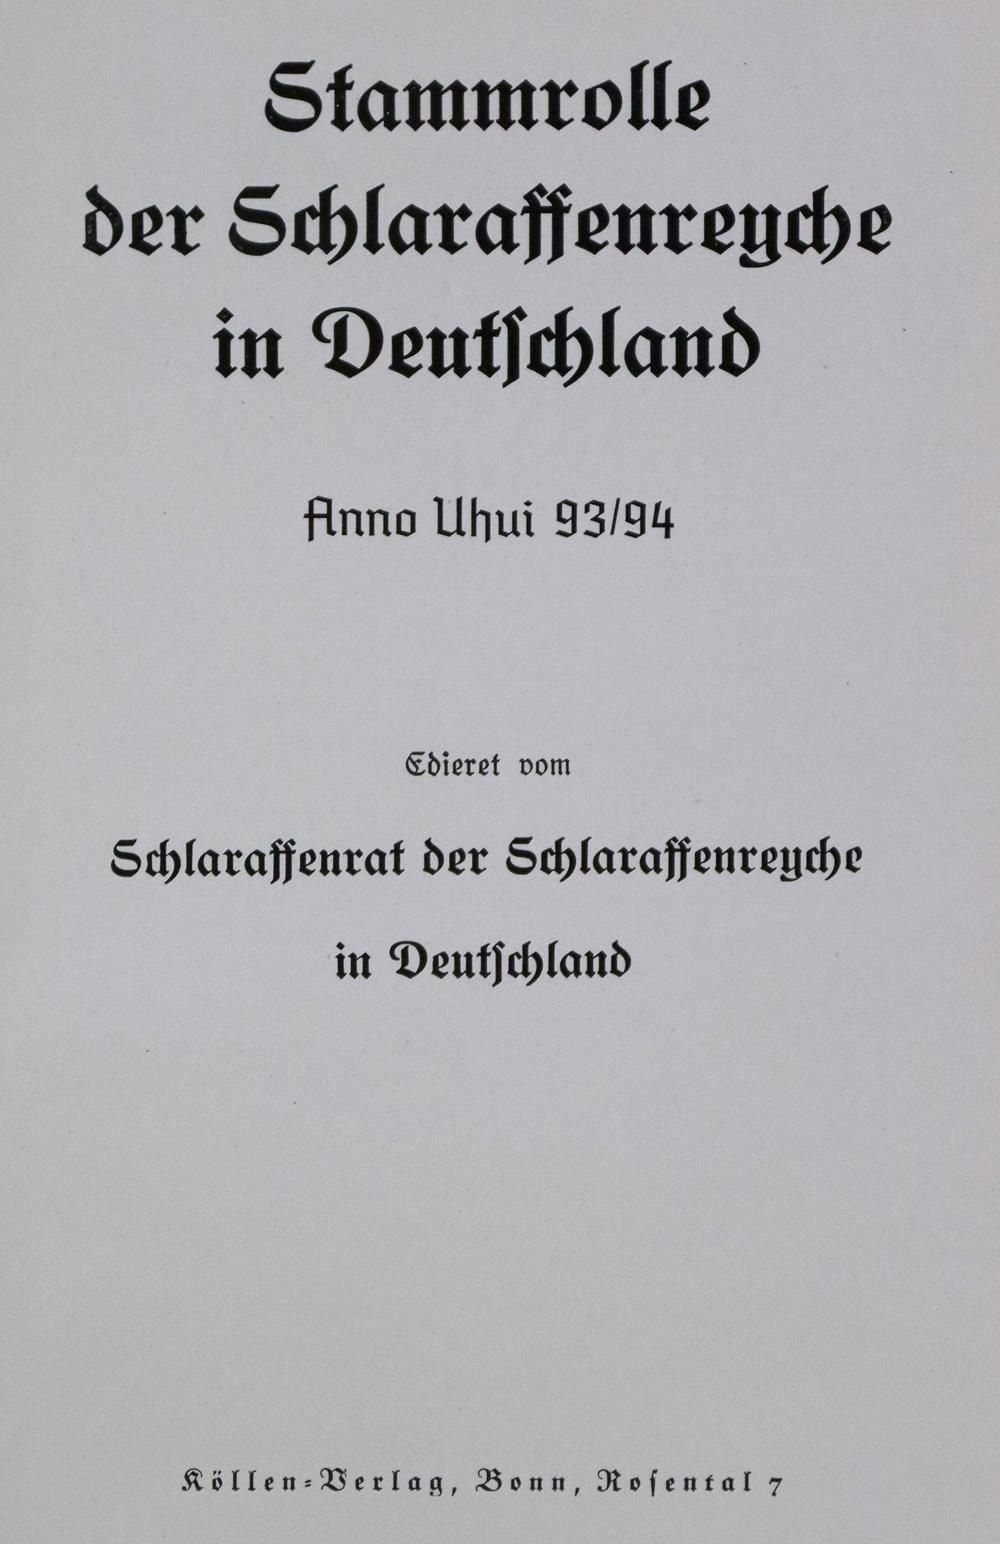 Stammrolle of the "Schlaraffenreyche" in Germany. Edieret vom Schlaraffenrat der&hellip;